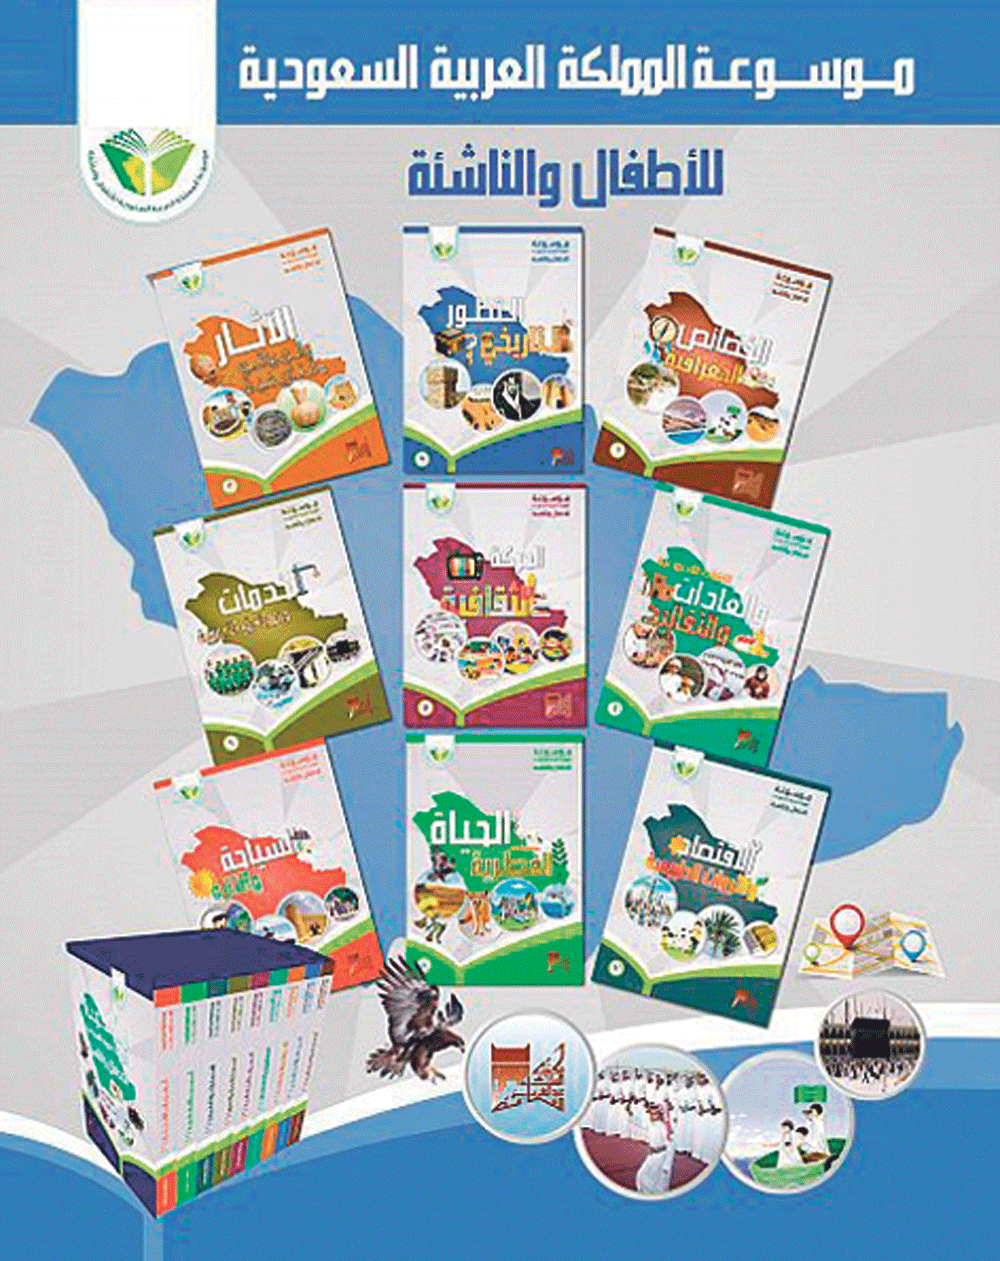 موسوعة جديدة للأطفال والناشئة من مكتبة الملك عبدالعزيز